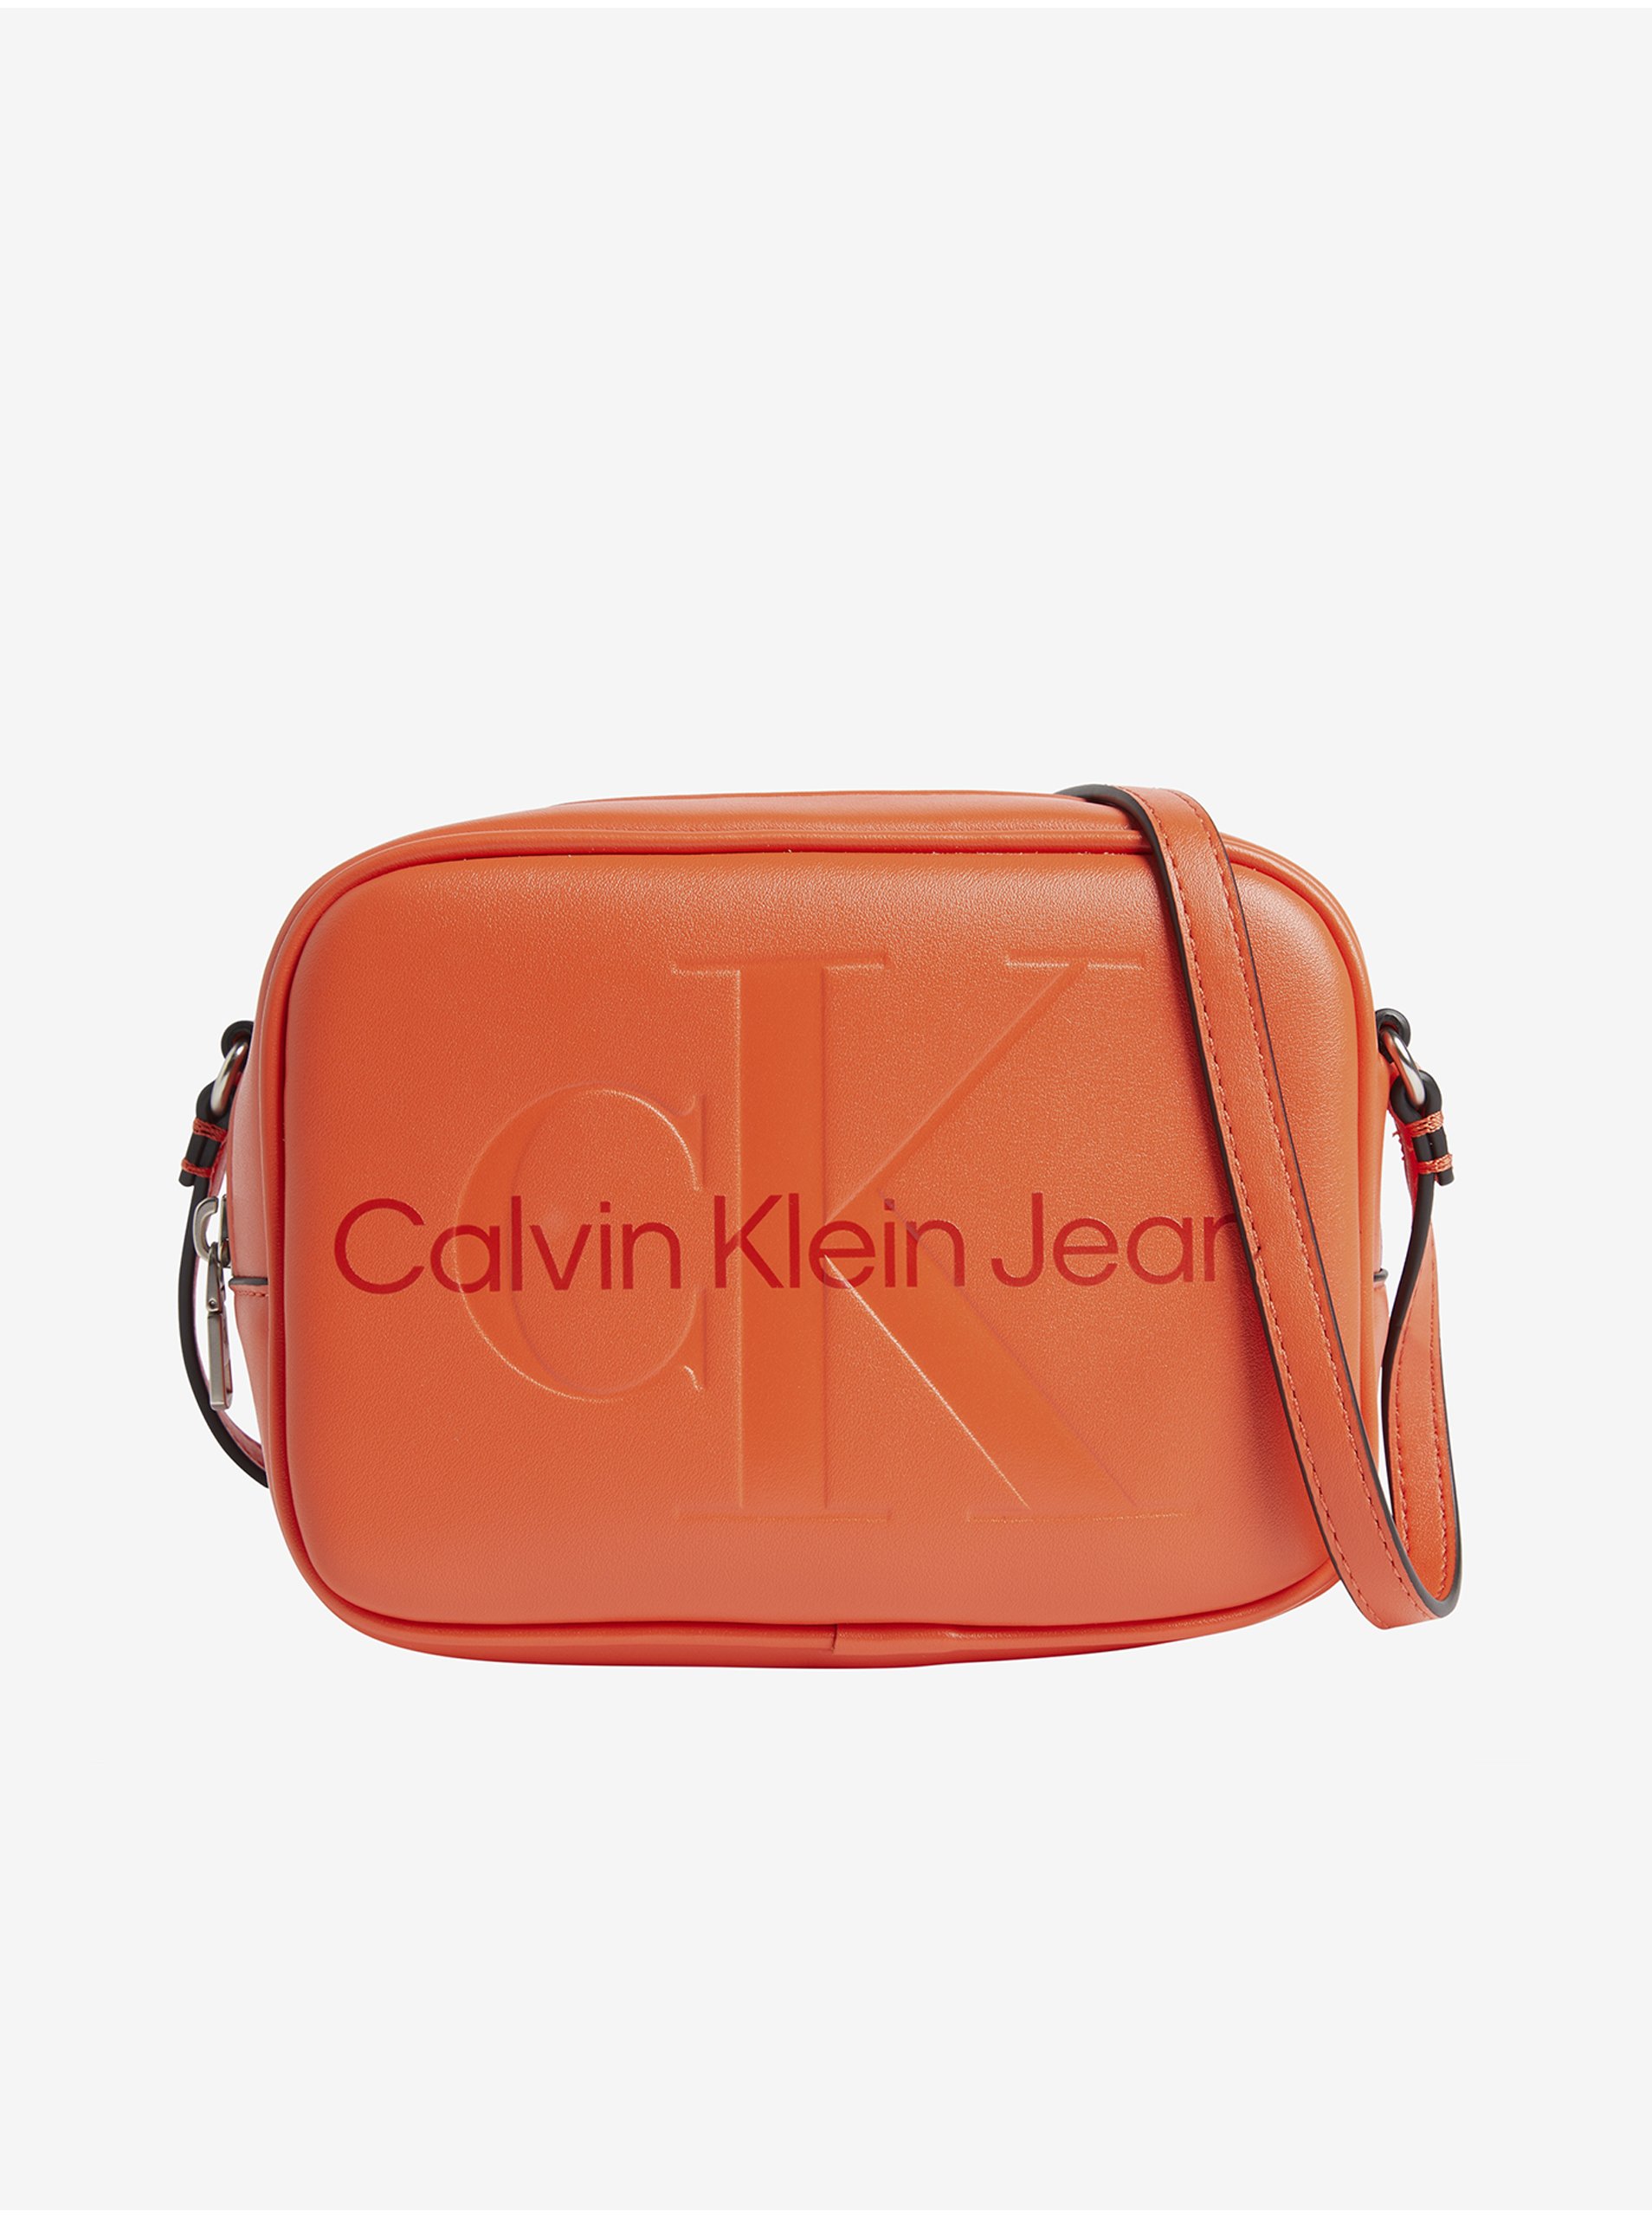 Lacno Kabelky pre ženy Calvin Klein Jeans - koralová